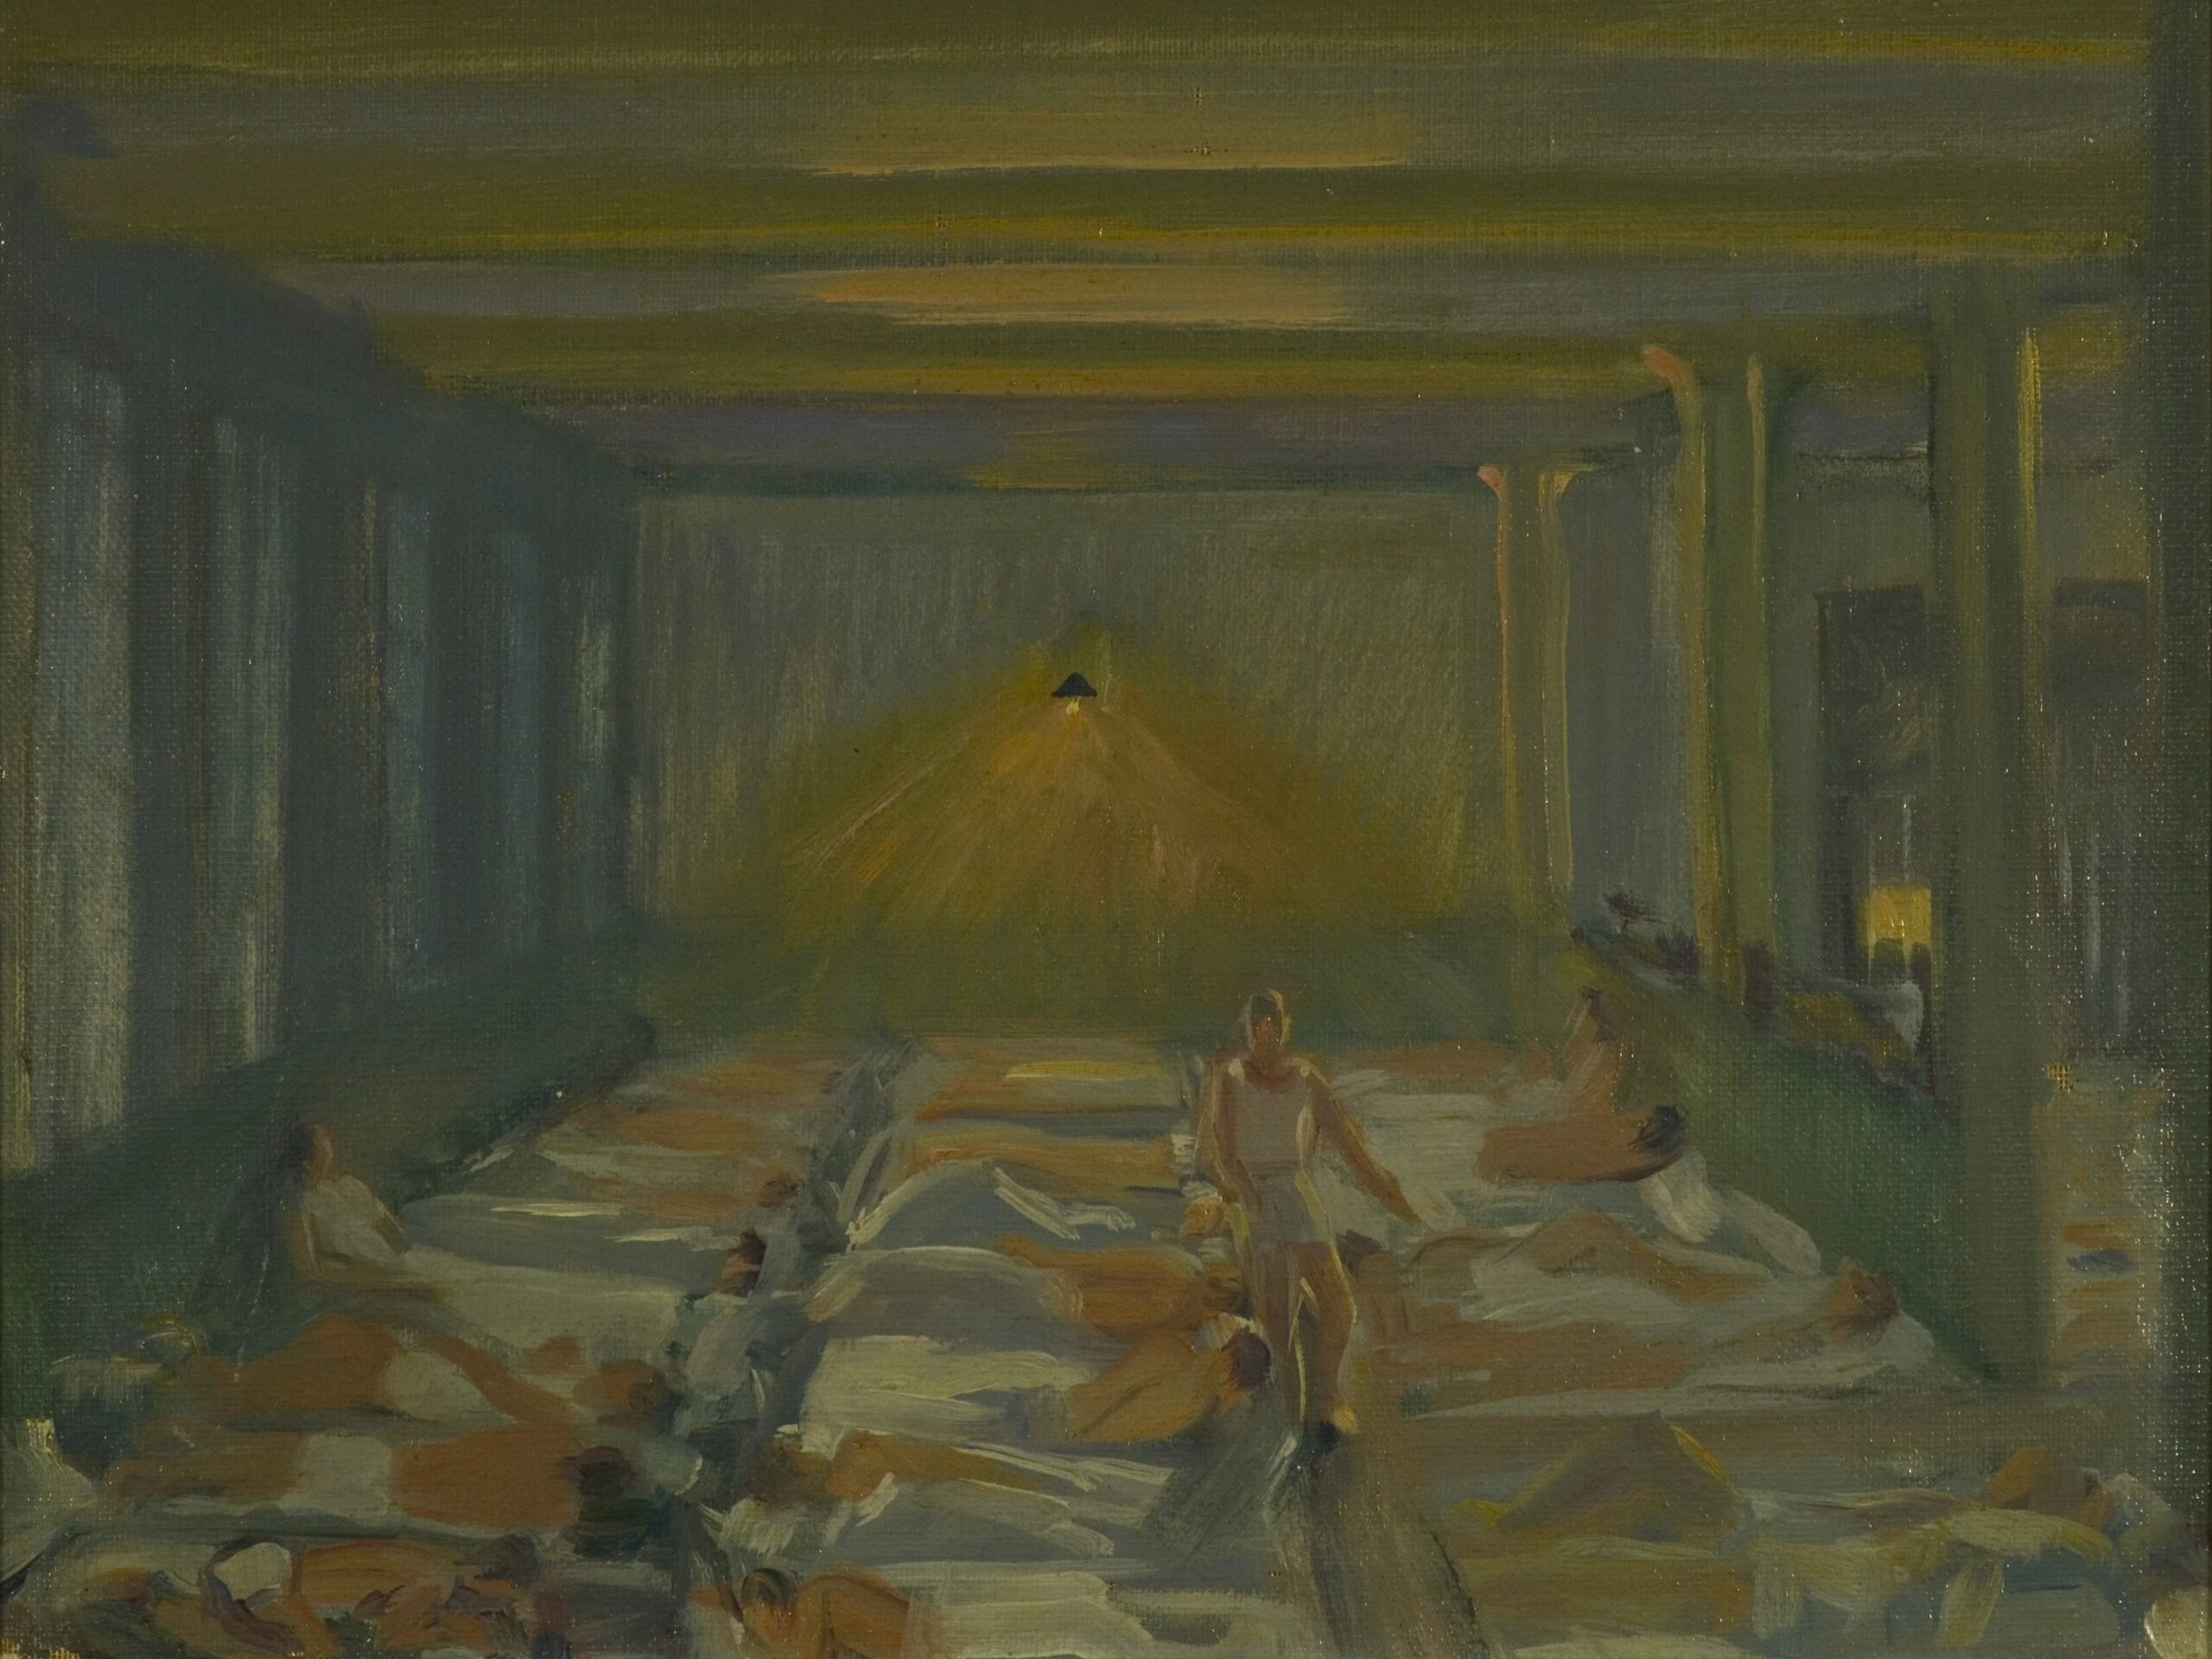 Pintura de José Manaut titulada La galería de noche, 1943. Óleo sobre tablex.